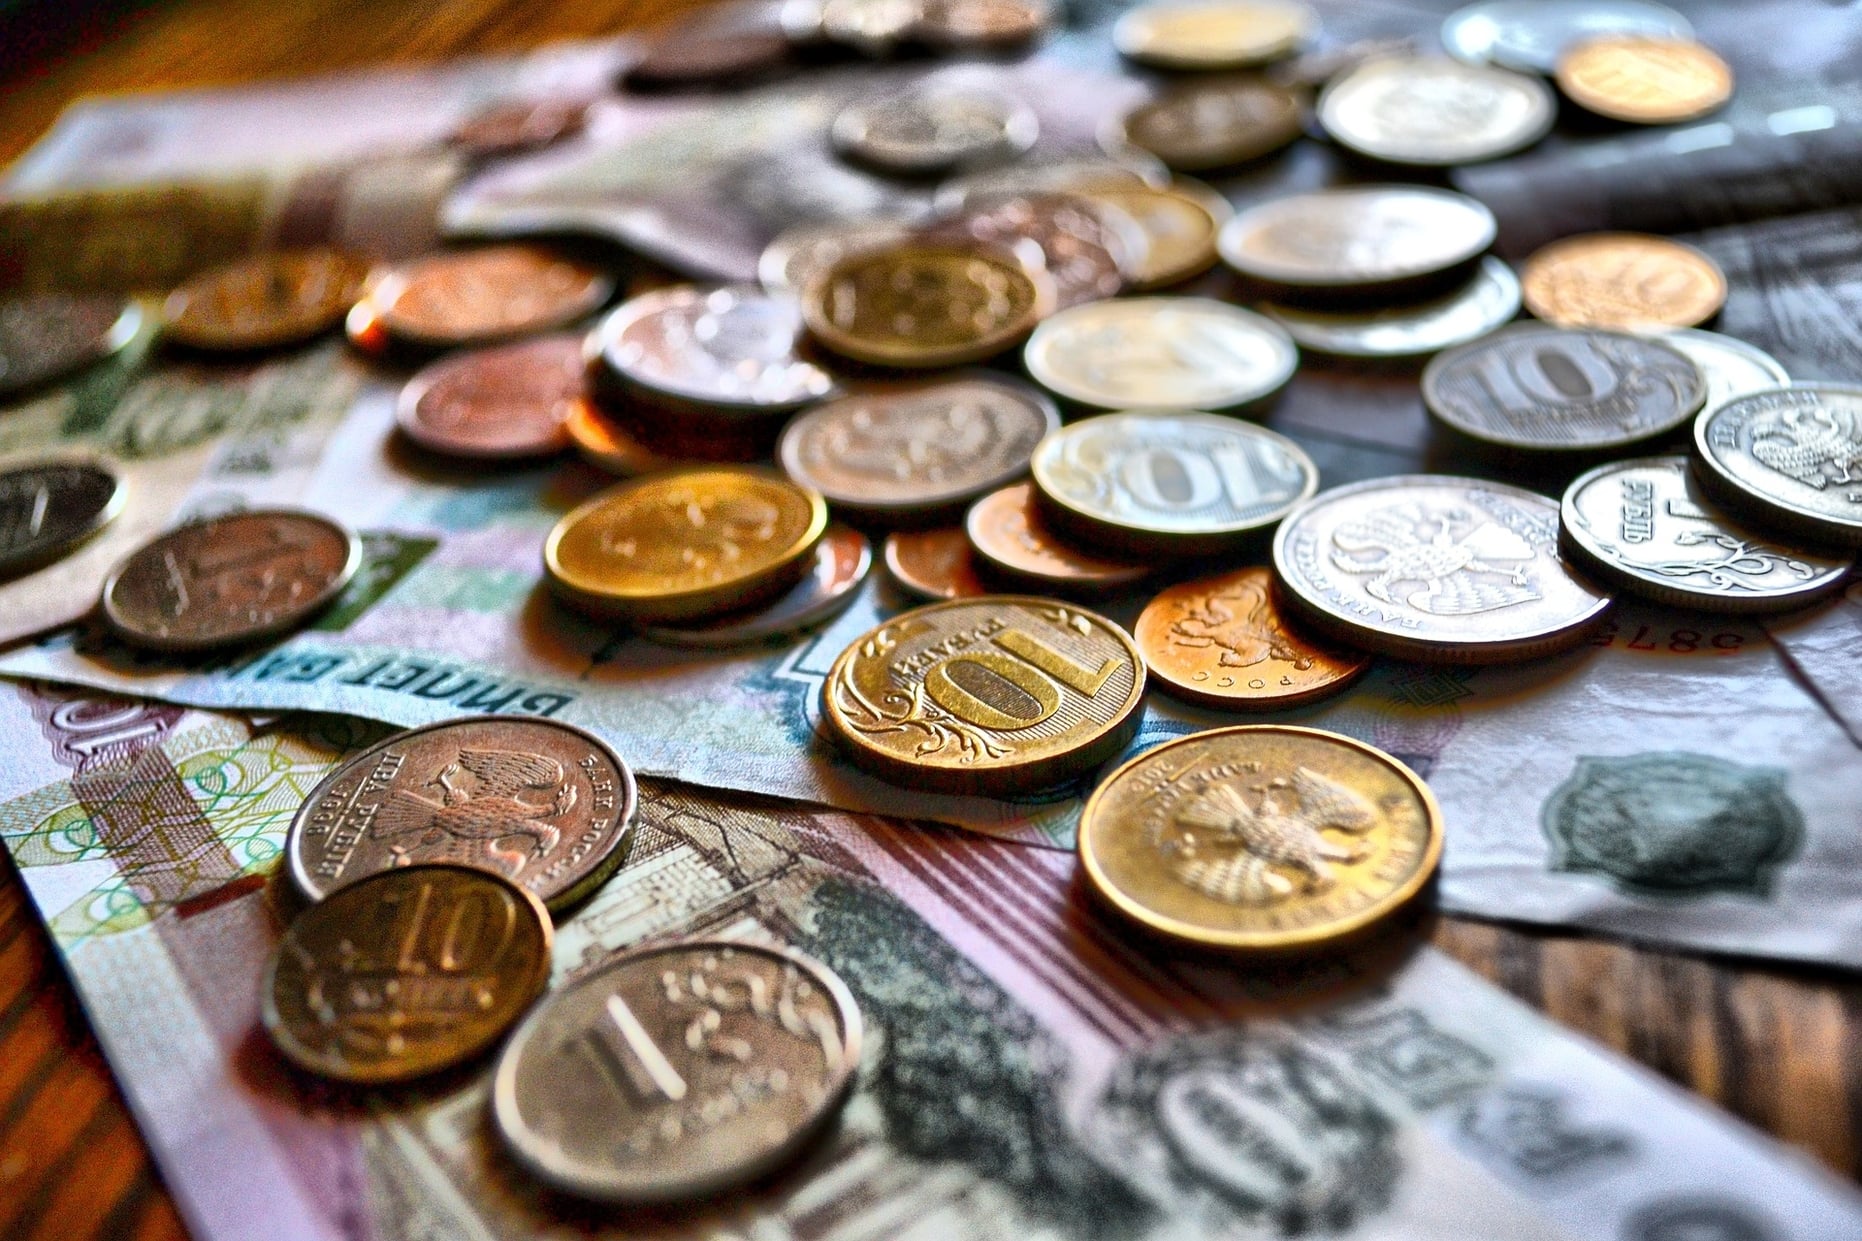 Karjalan tasavallan ja piirien budjeteista maksettavat palkat kasvavat. Karjalan hallitus myöntää tarkoitukseen 700 miljoonaa ruplaa. Kuva: kuvituskuva / pixabay.com